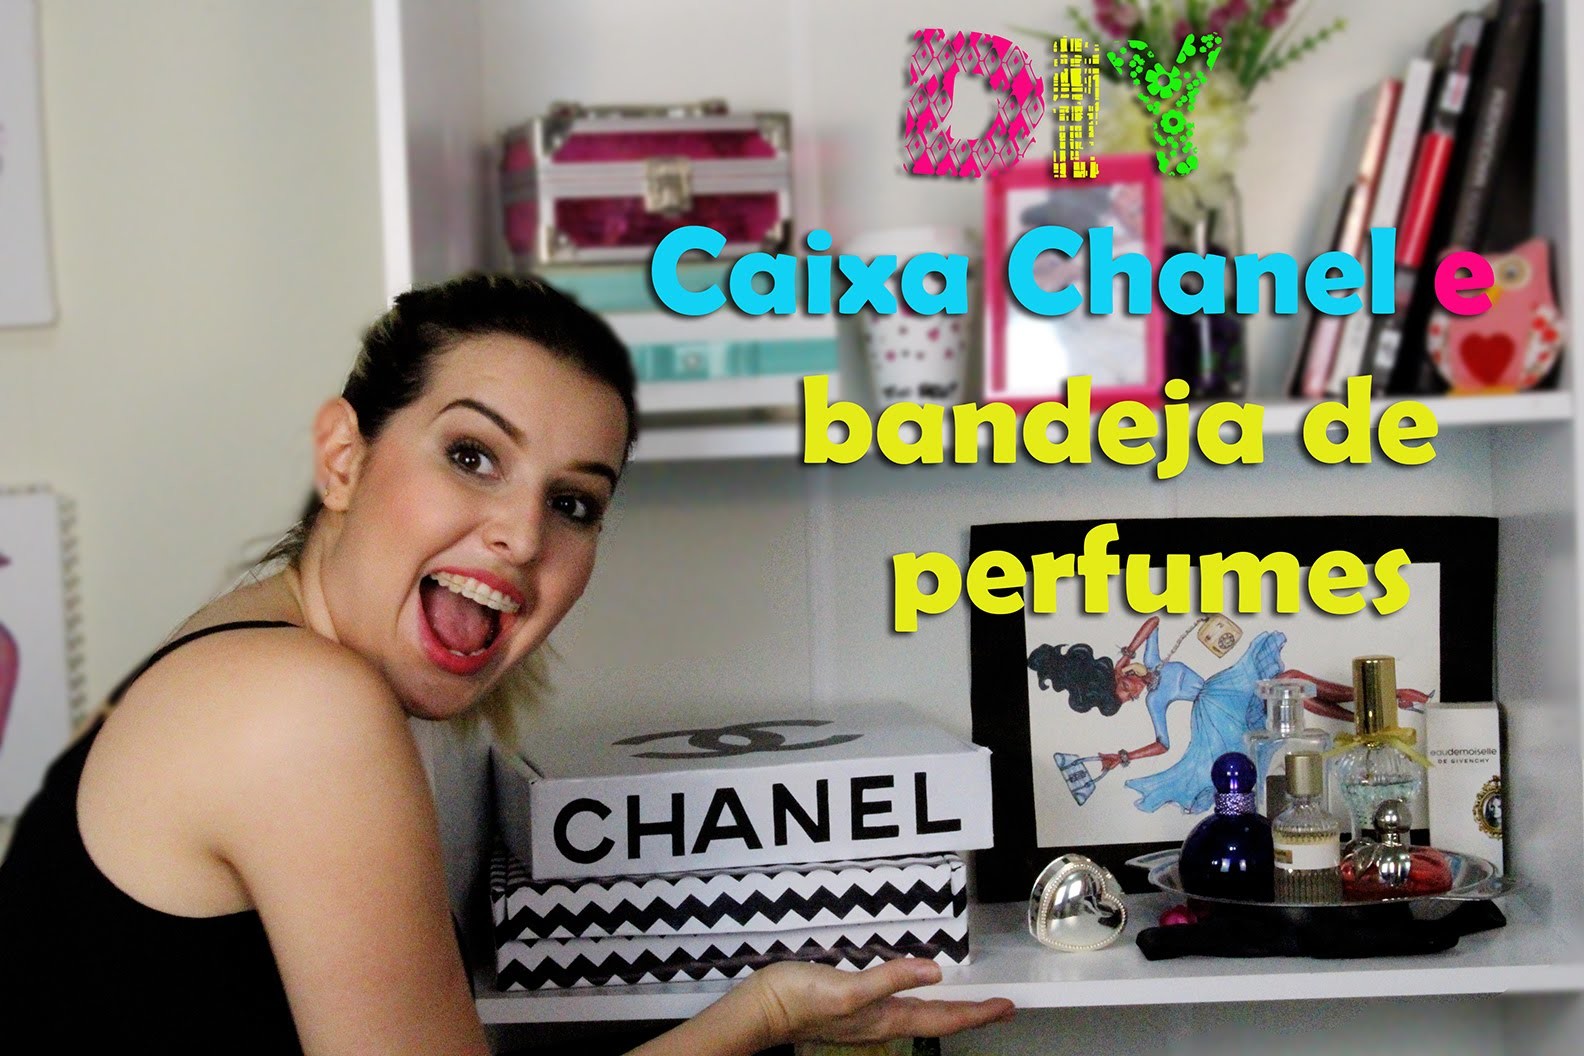 Diy - Caixa Chanel + Bandeja de Perfumes - Super fácil de fazer. Thabatta Campos